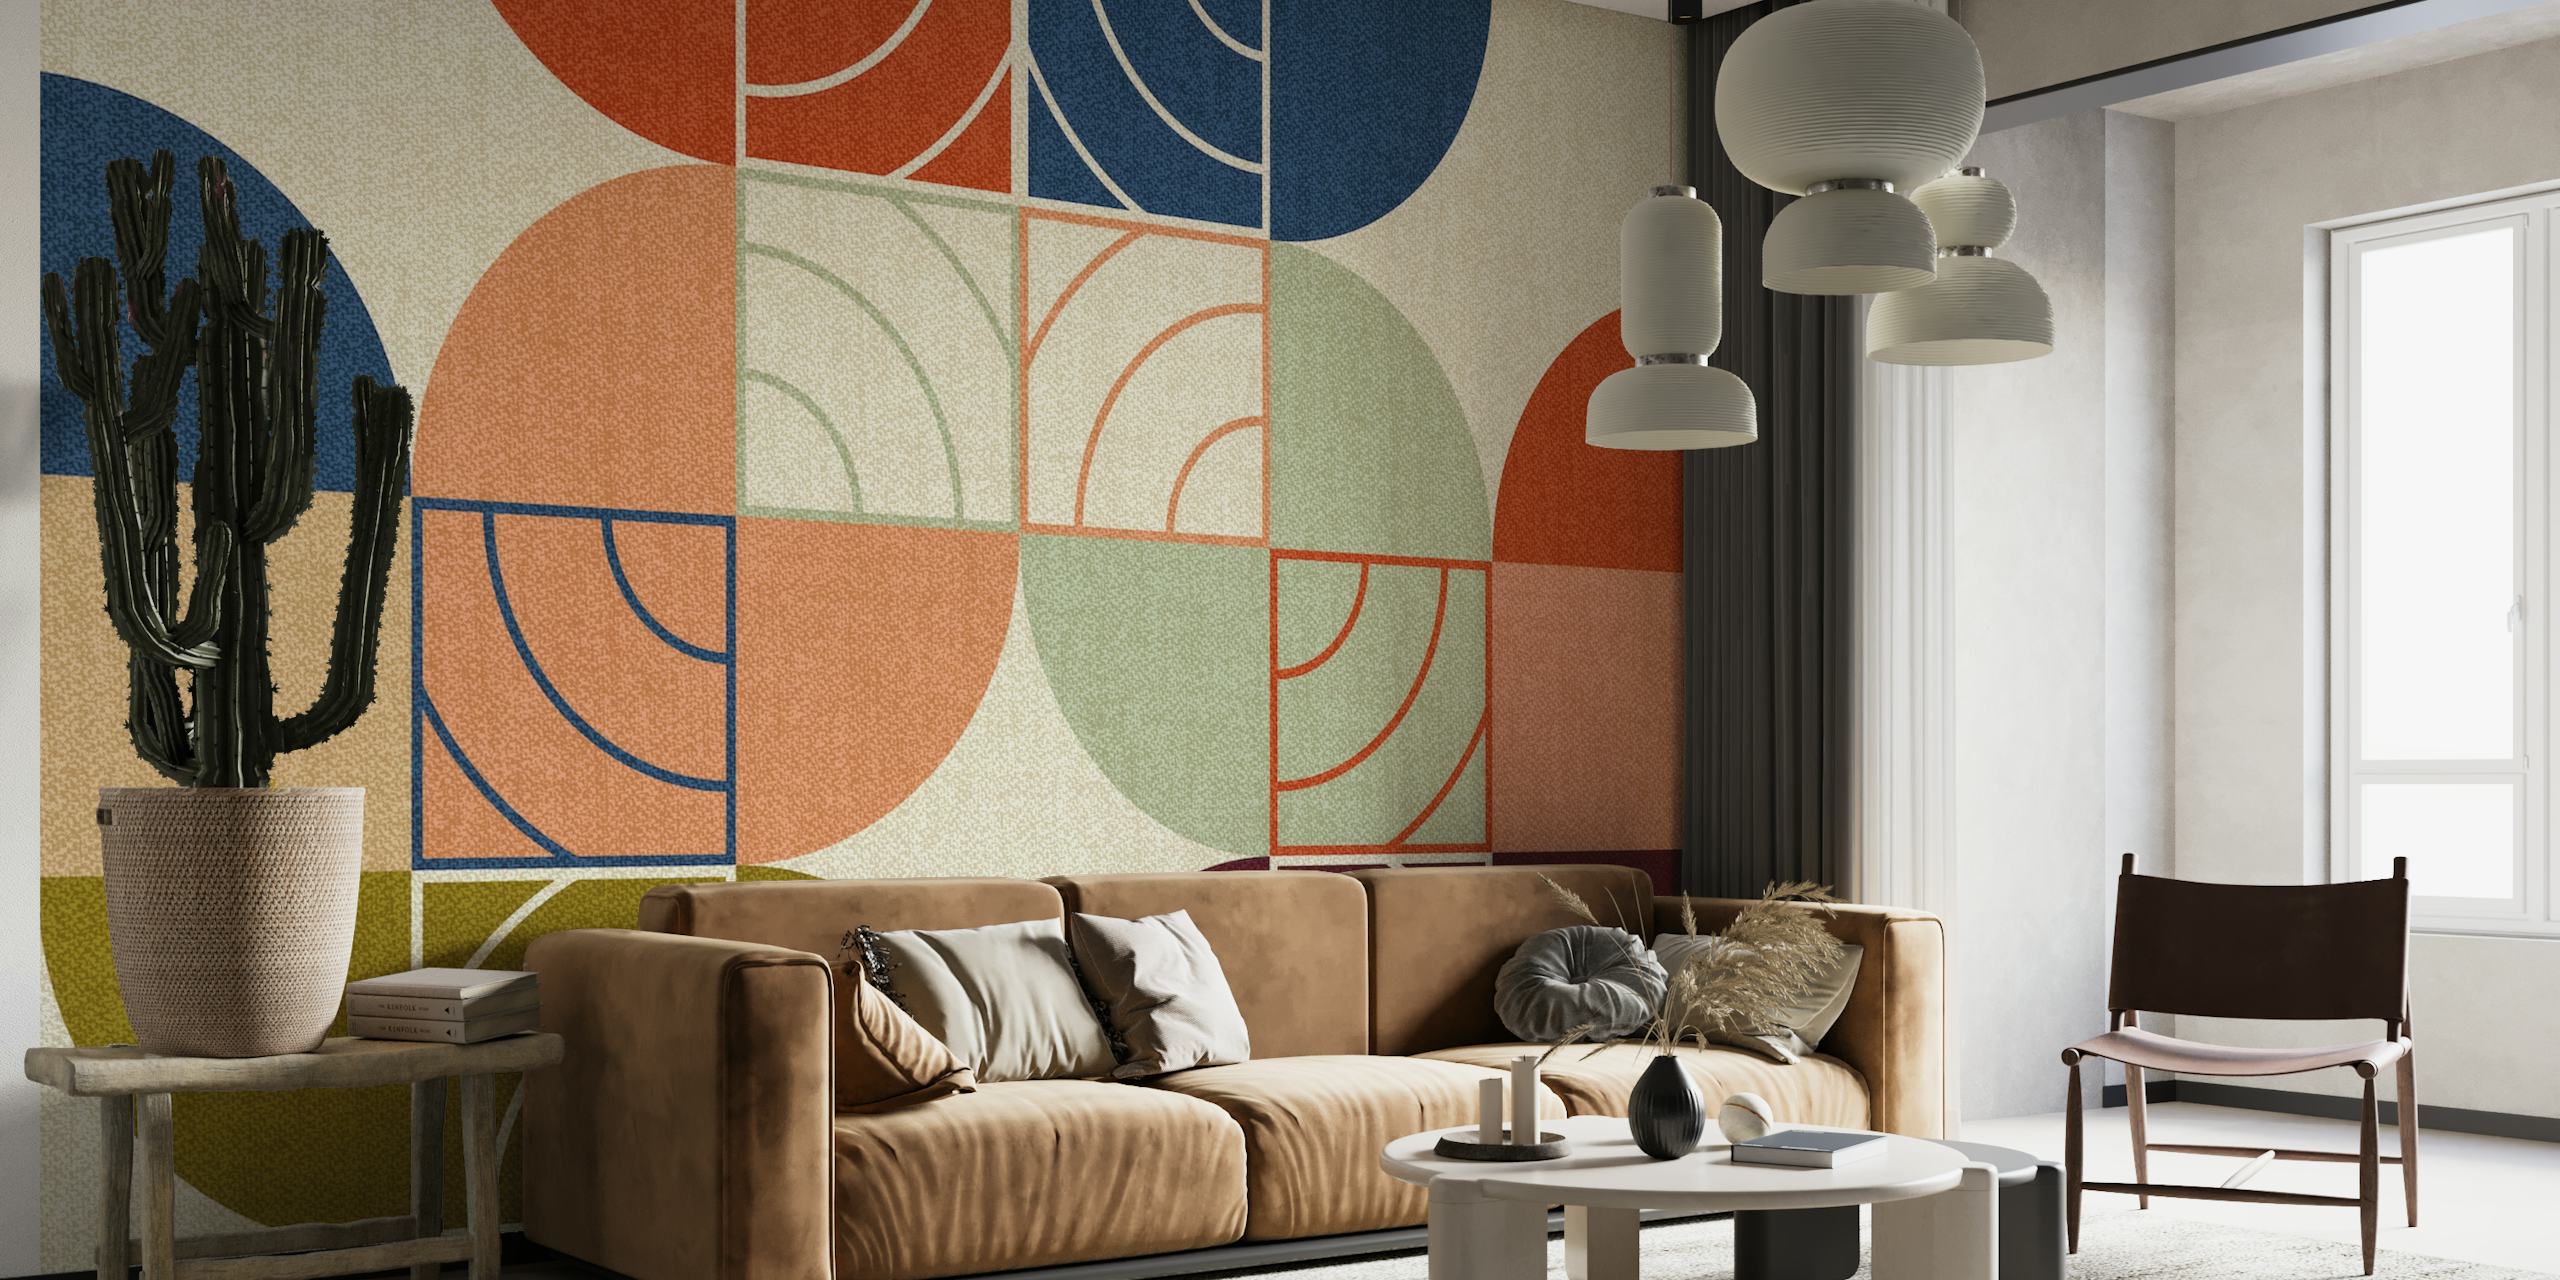 Mural de parede de formas geométricas em estilo Art Déco e Bauhaus com tons terrosos